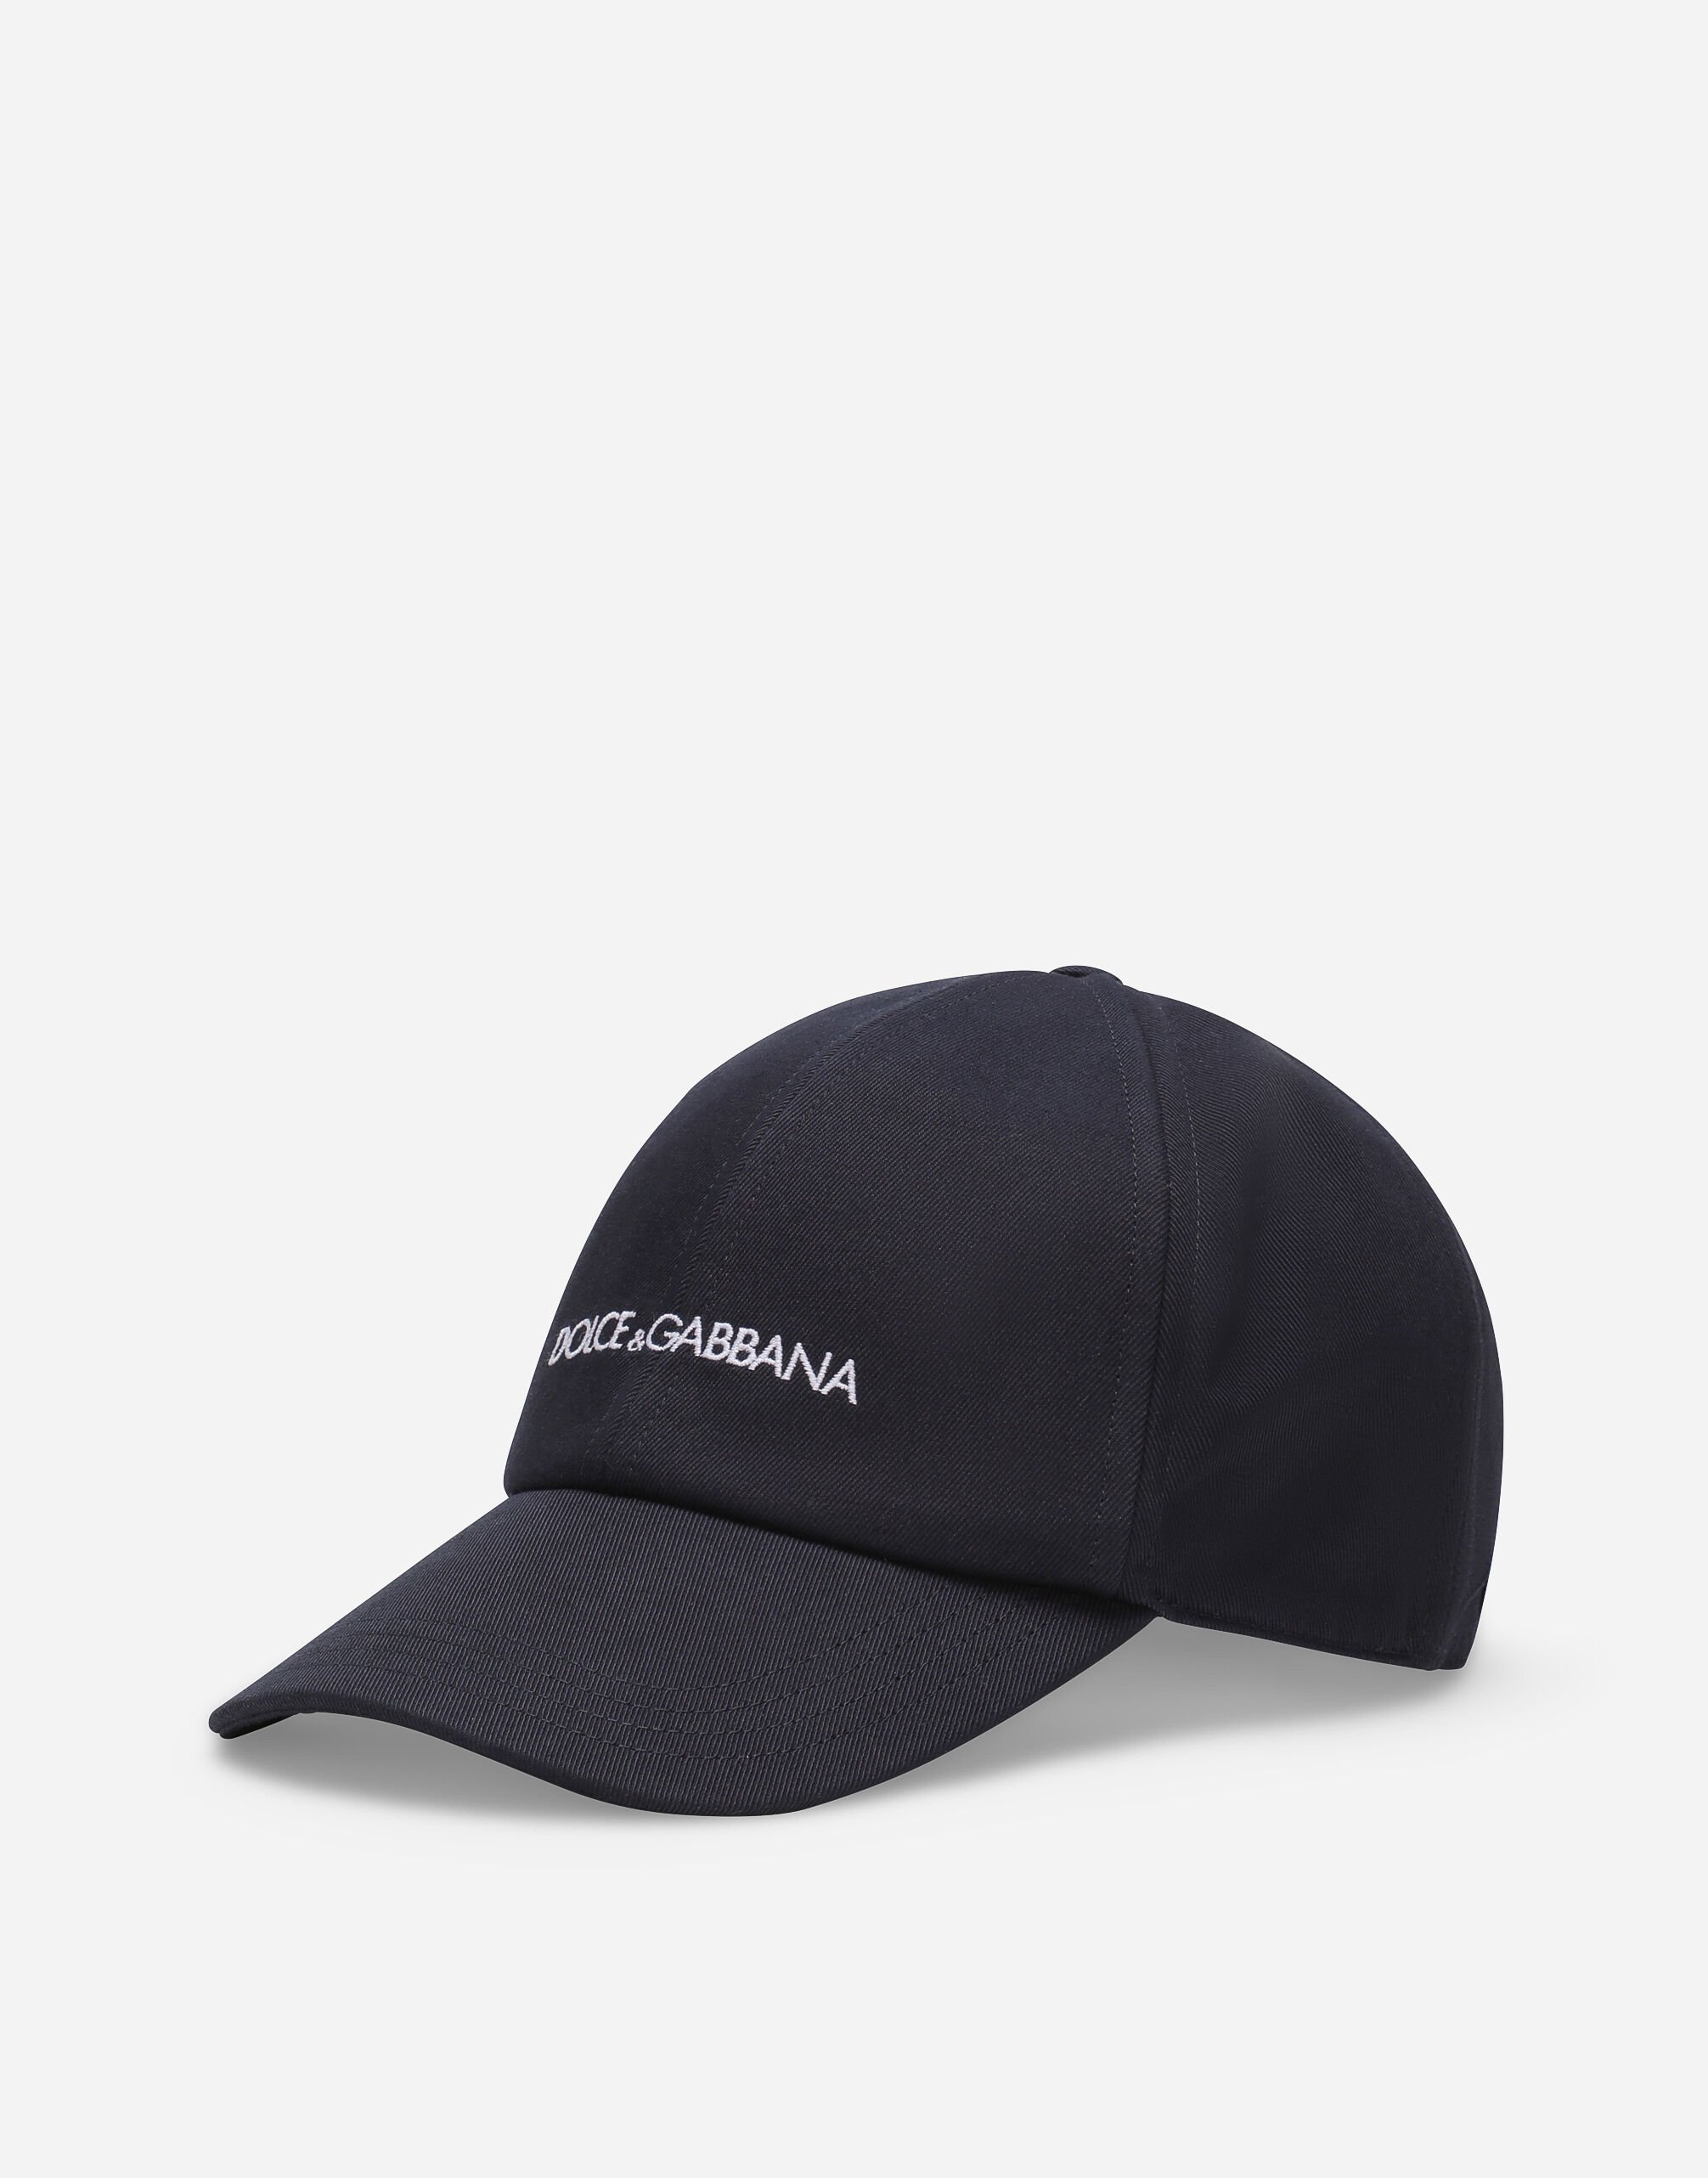 Dolce & Gabbana Cotton baseball cap with Dolce&Gabbana logo Print G5IF1THI1QA